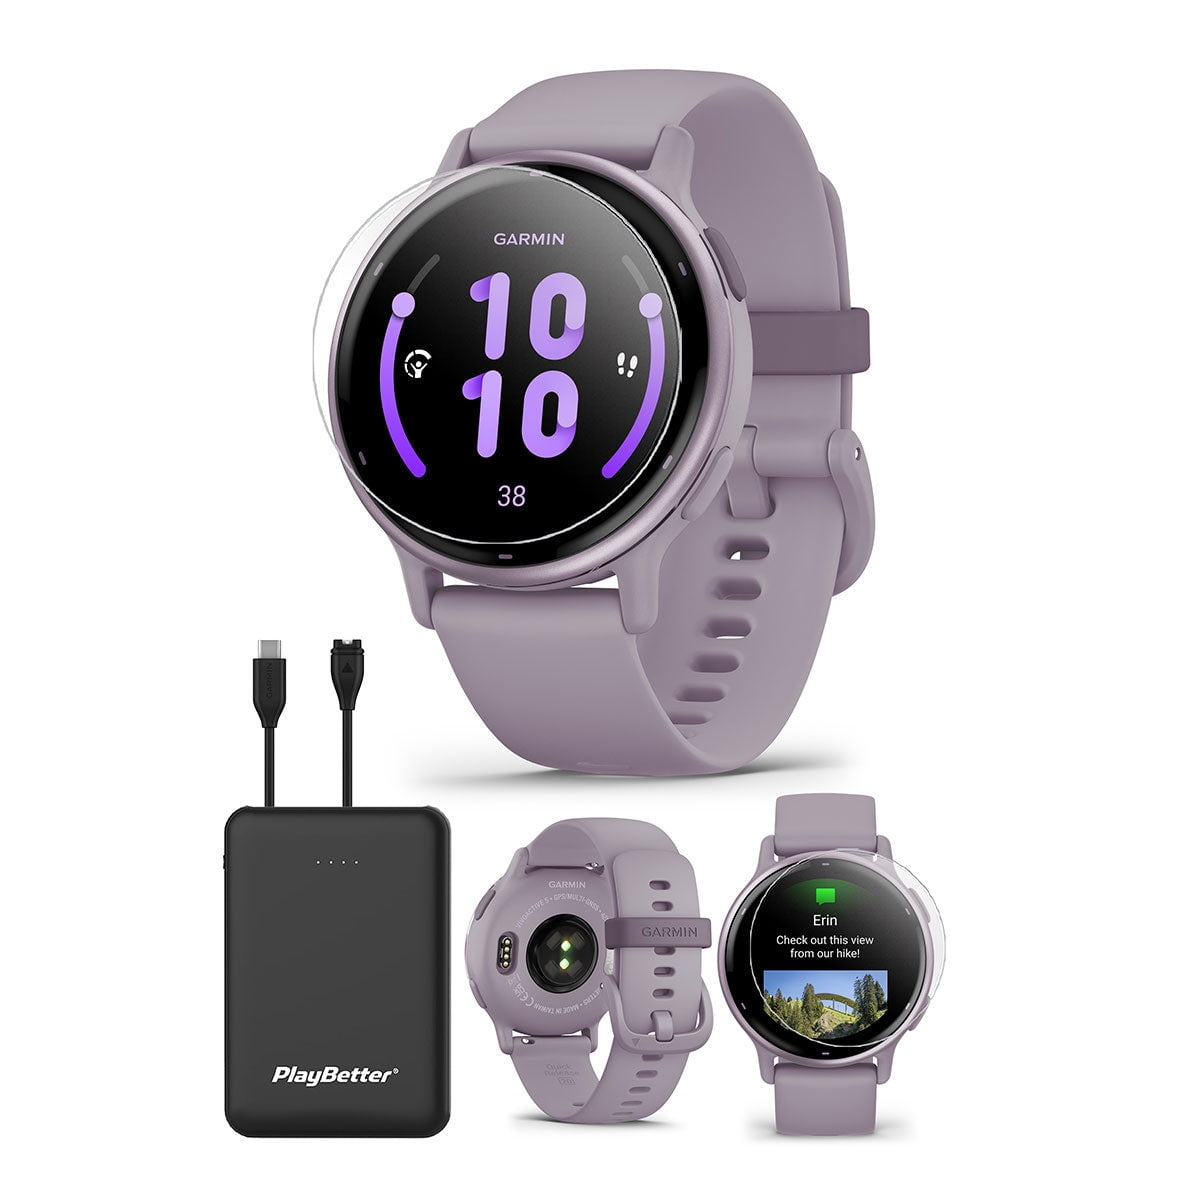 Huawei Honor Dream Smartwatch GPS incorporado Cerámica Bezel Rosa